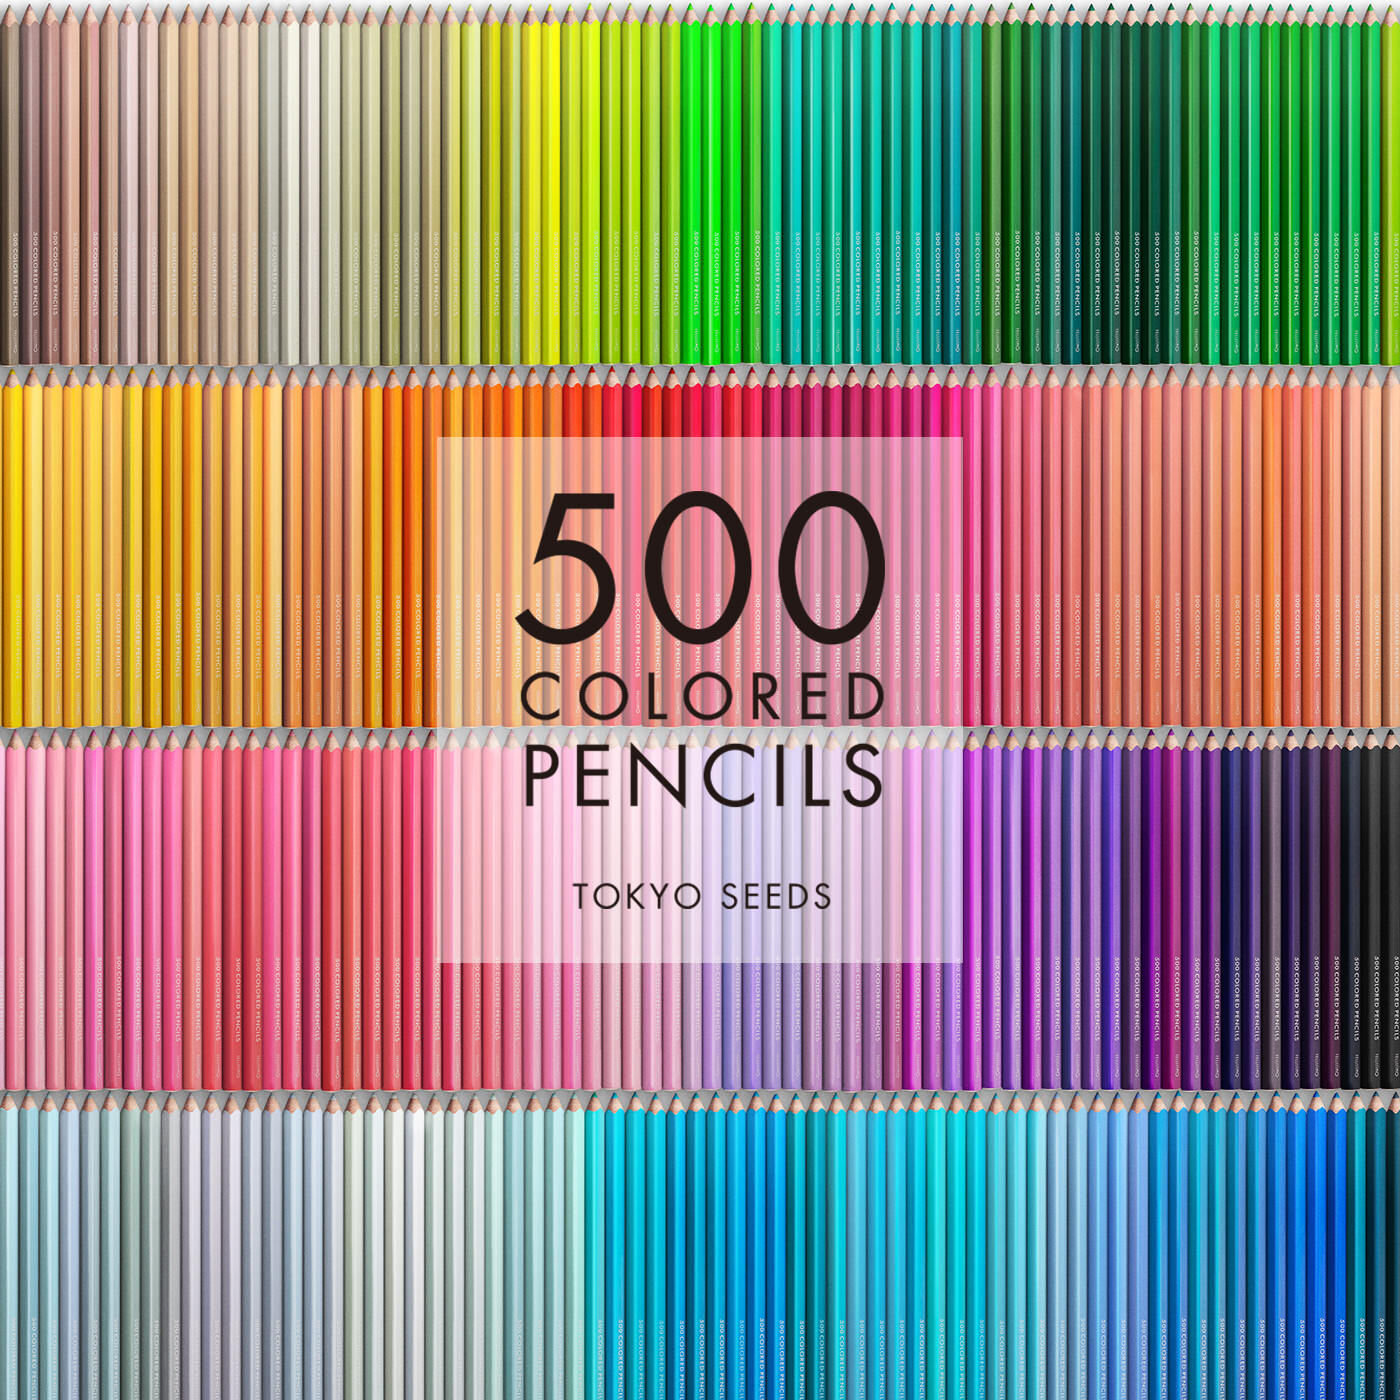 Real Stock|【26/500 MOROCCAN MELT】500色の色えんぴつ TOKYO SEEDS|1992年、世界初の「500色」という膨大な色数の色えんぴつが誕生して以来、その販売数は発売当初から合わせると、世界55ヵ国10万セット以上。今回、メイド・イン・ジャパンにこだわり、すべてが新しく生まれ変わって登場しました。